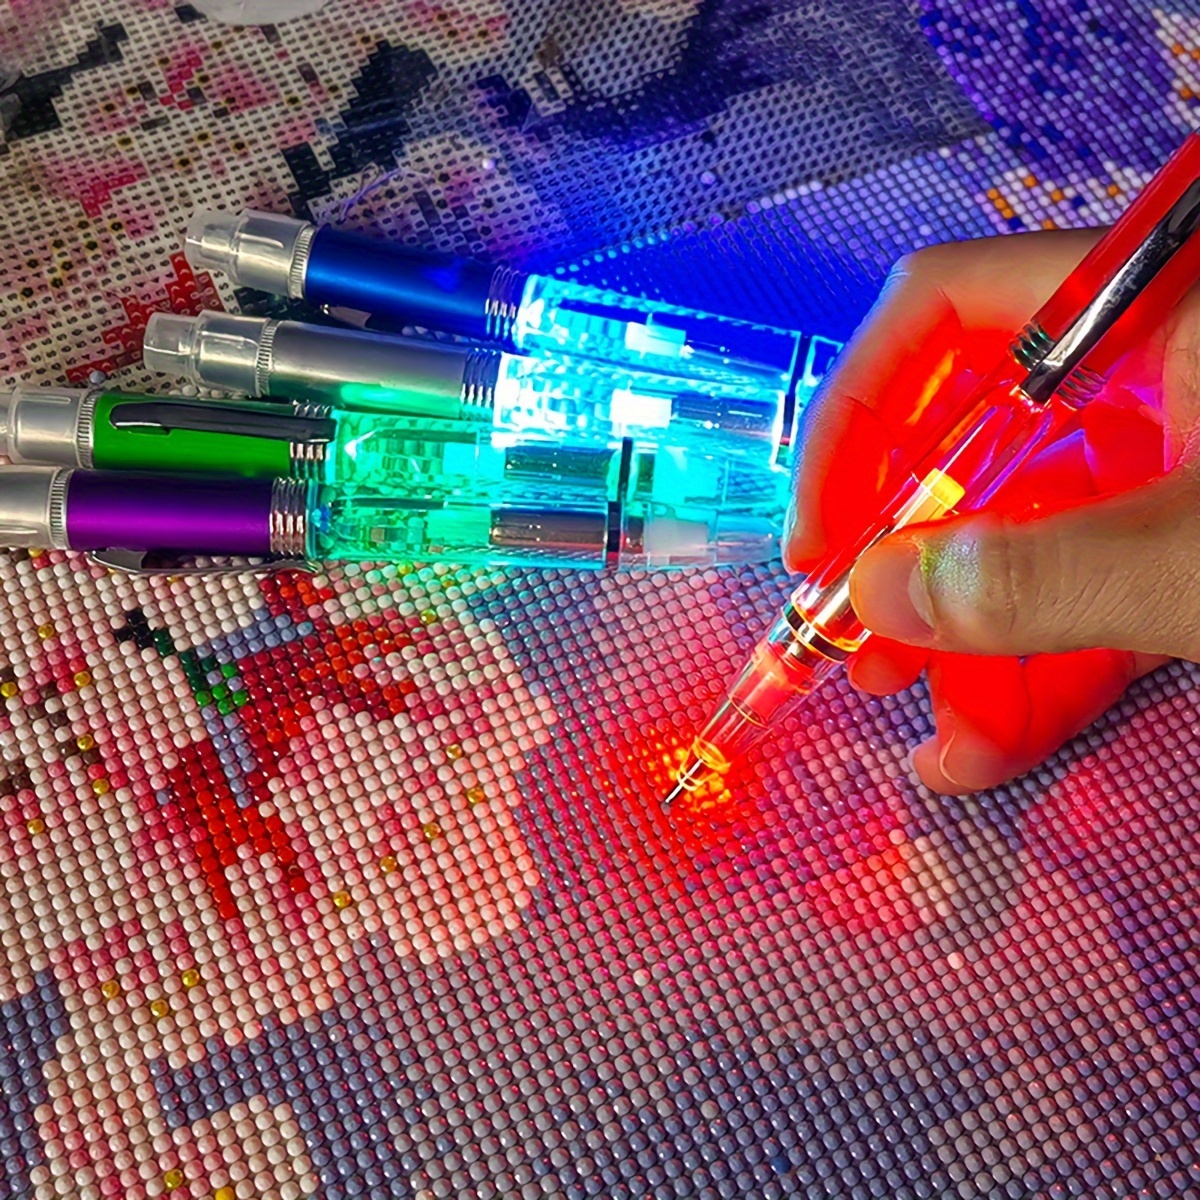 Diamond Painting Tool, Battery Powered Light Up Diamond Painting Pen